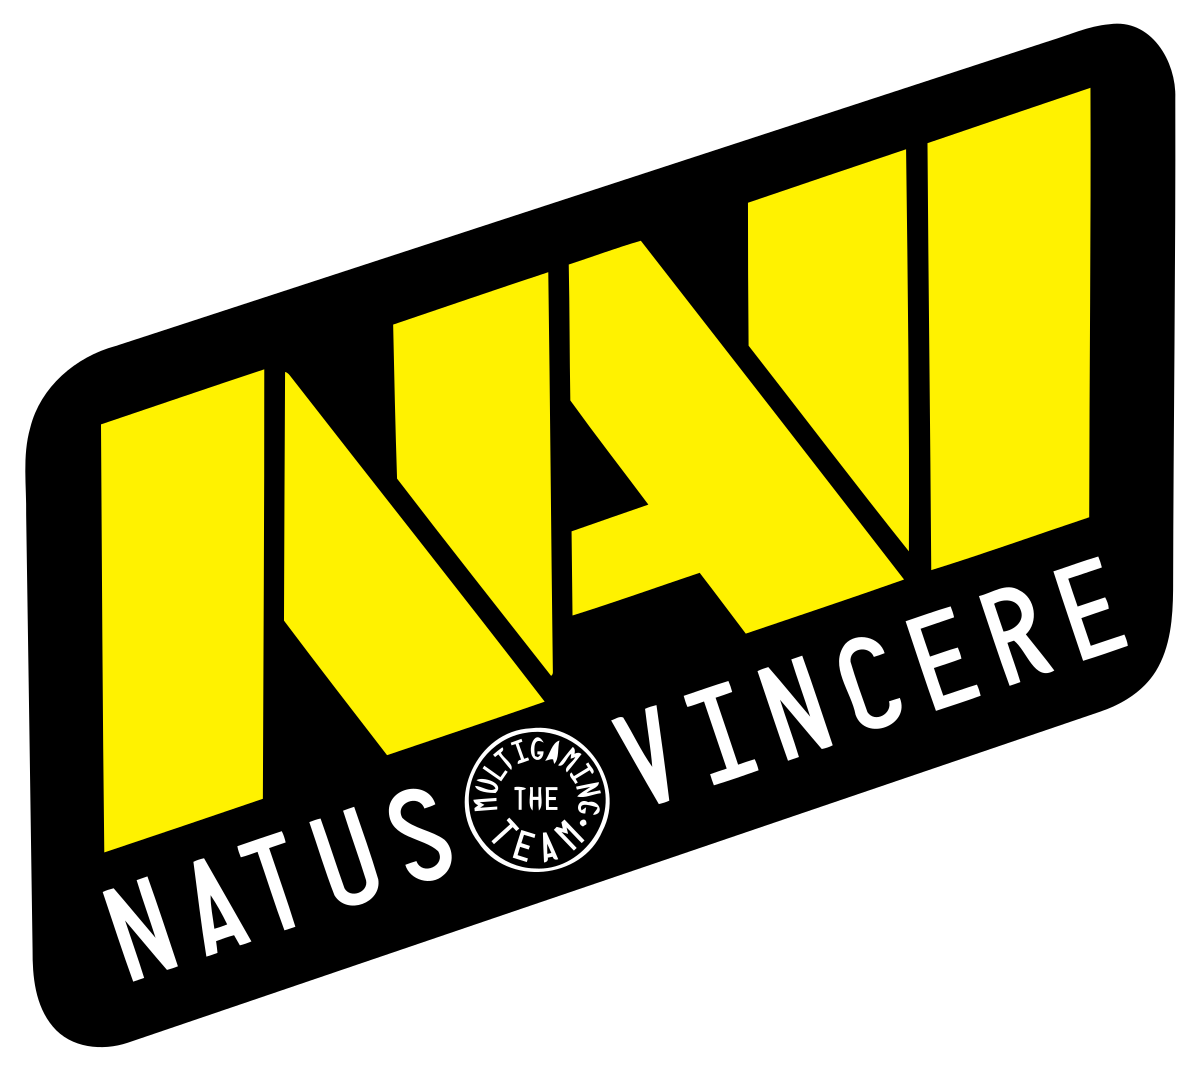 Natus Vincere планирует создать женскую команду по CS:GO, Dota 2 или Valorant